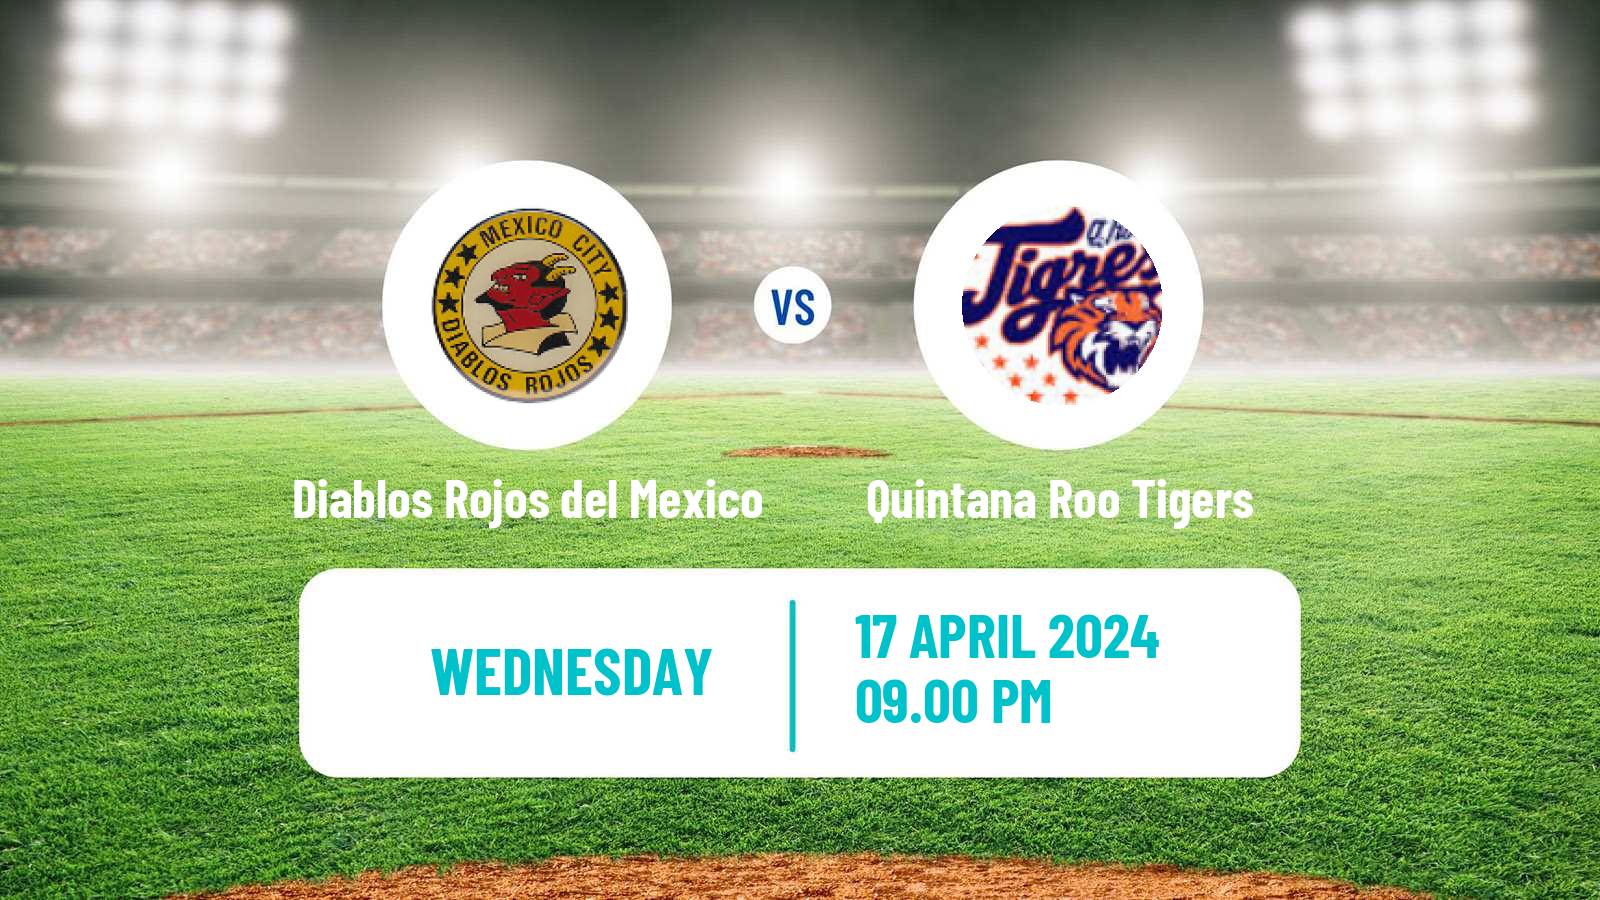 Baseball LMB Diablos Rojos del Mexico - Quintana Roo Tigers